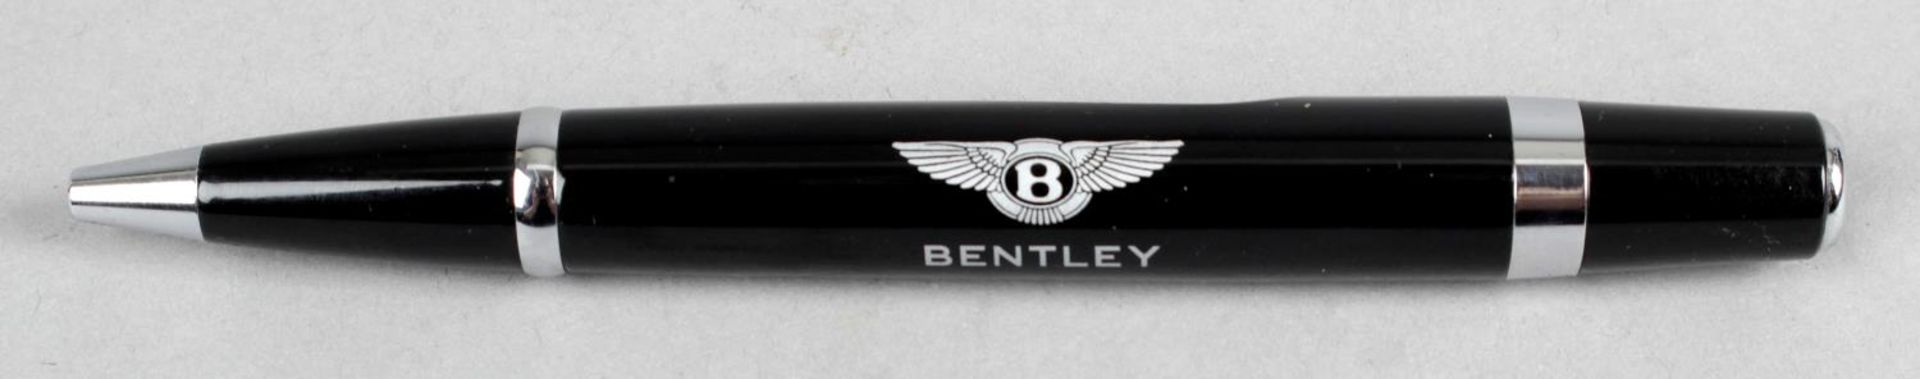 A Bentley ballpoint pen,